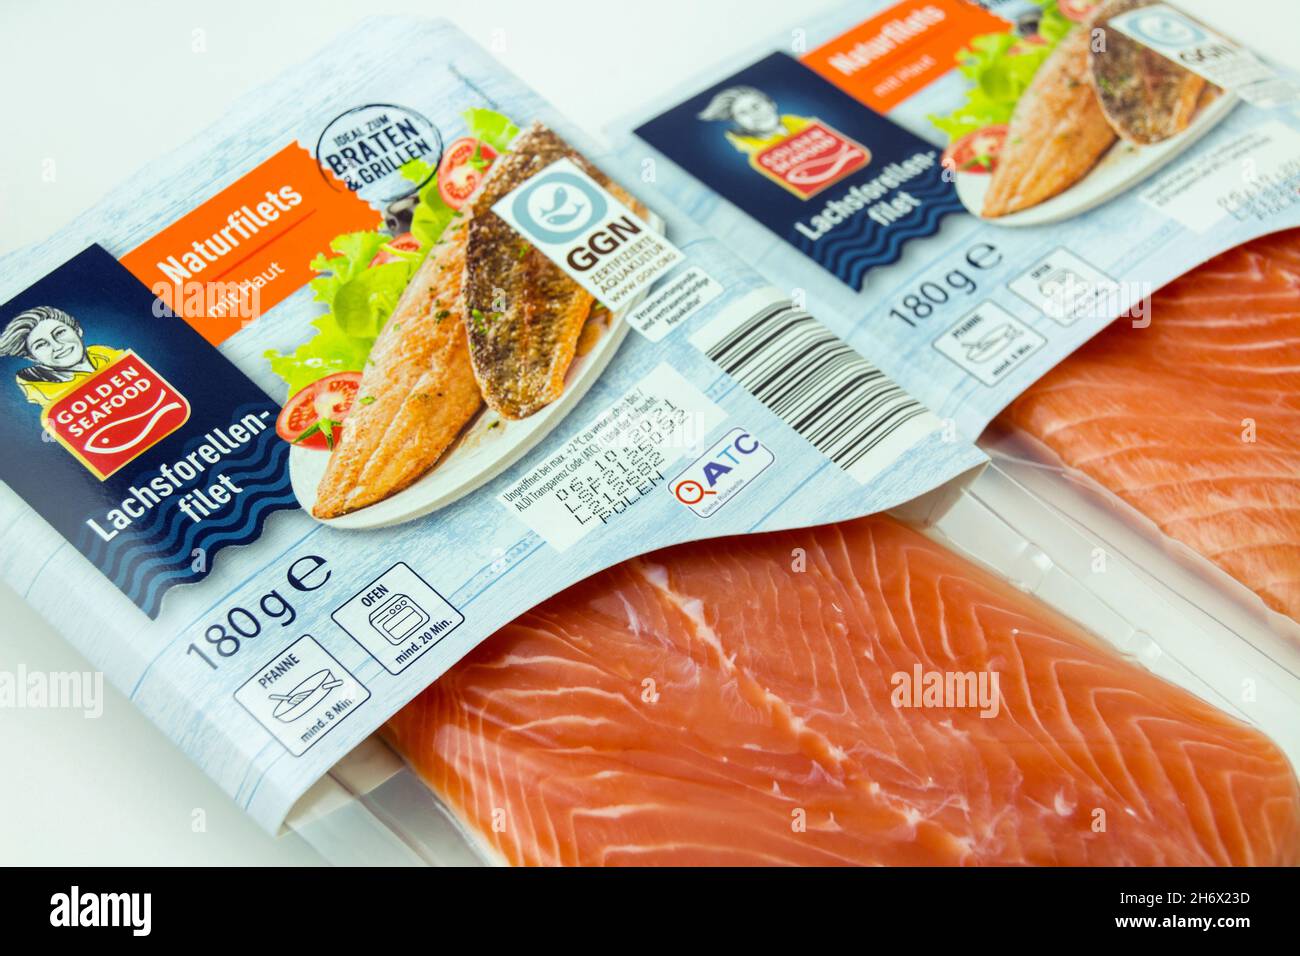 Seafood Golden - Seafood 2021: Label 1. GGN Golden Stockfotografie und Hamburg, Label GGNLachsforellen Alamy und Oktober - Deutschland Lachsforellen